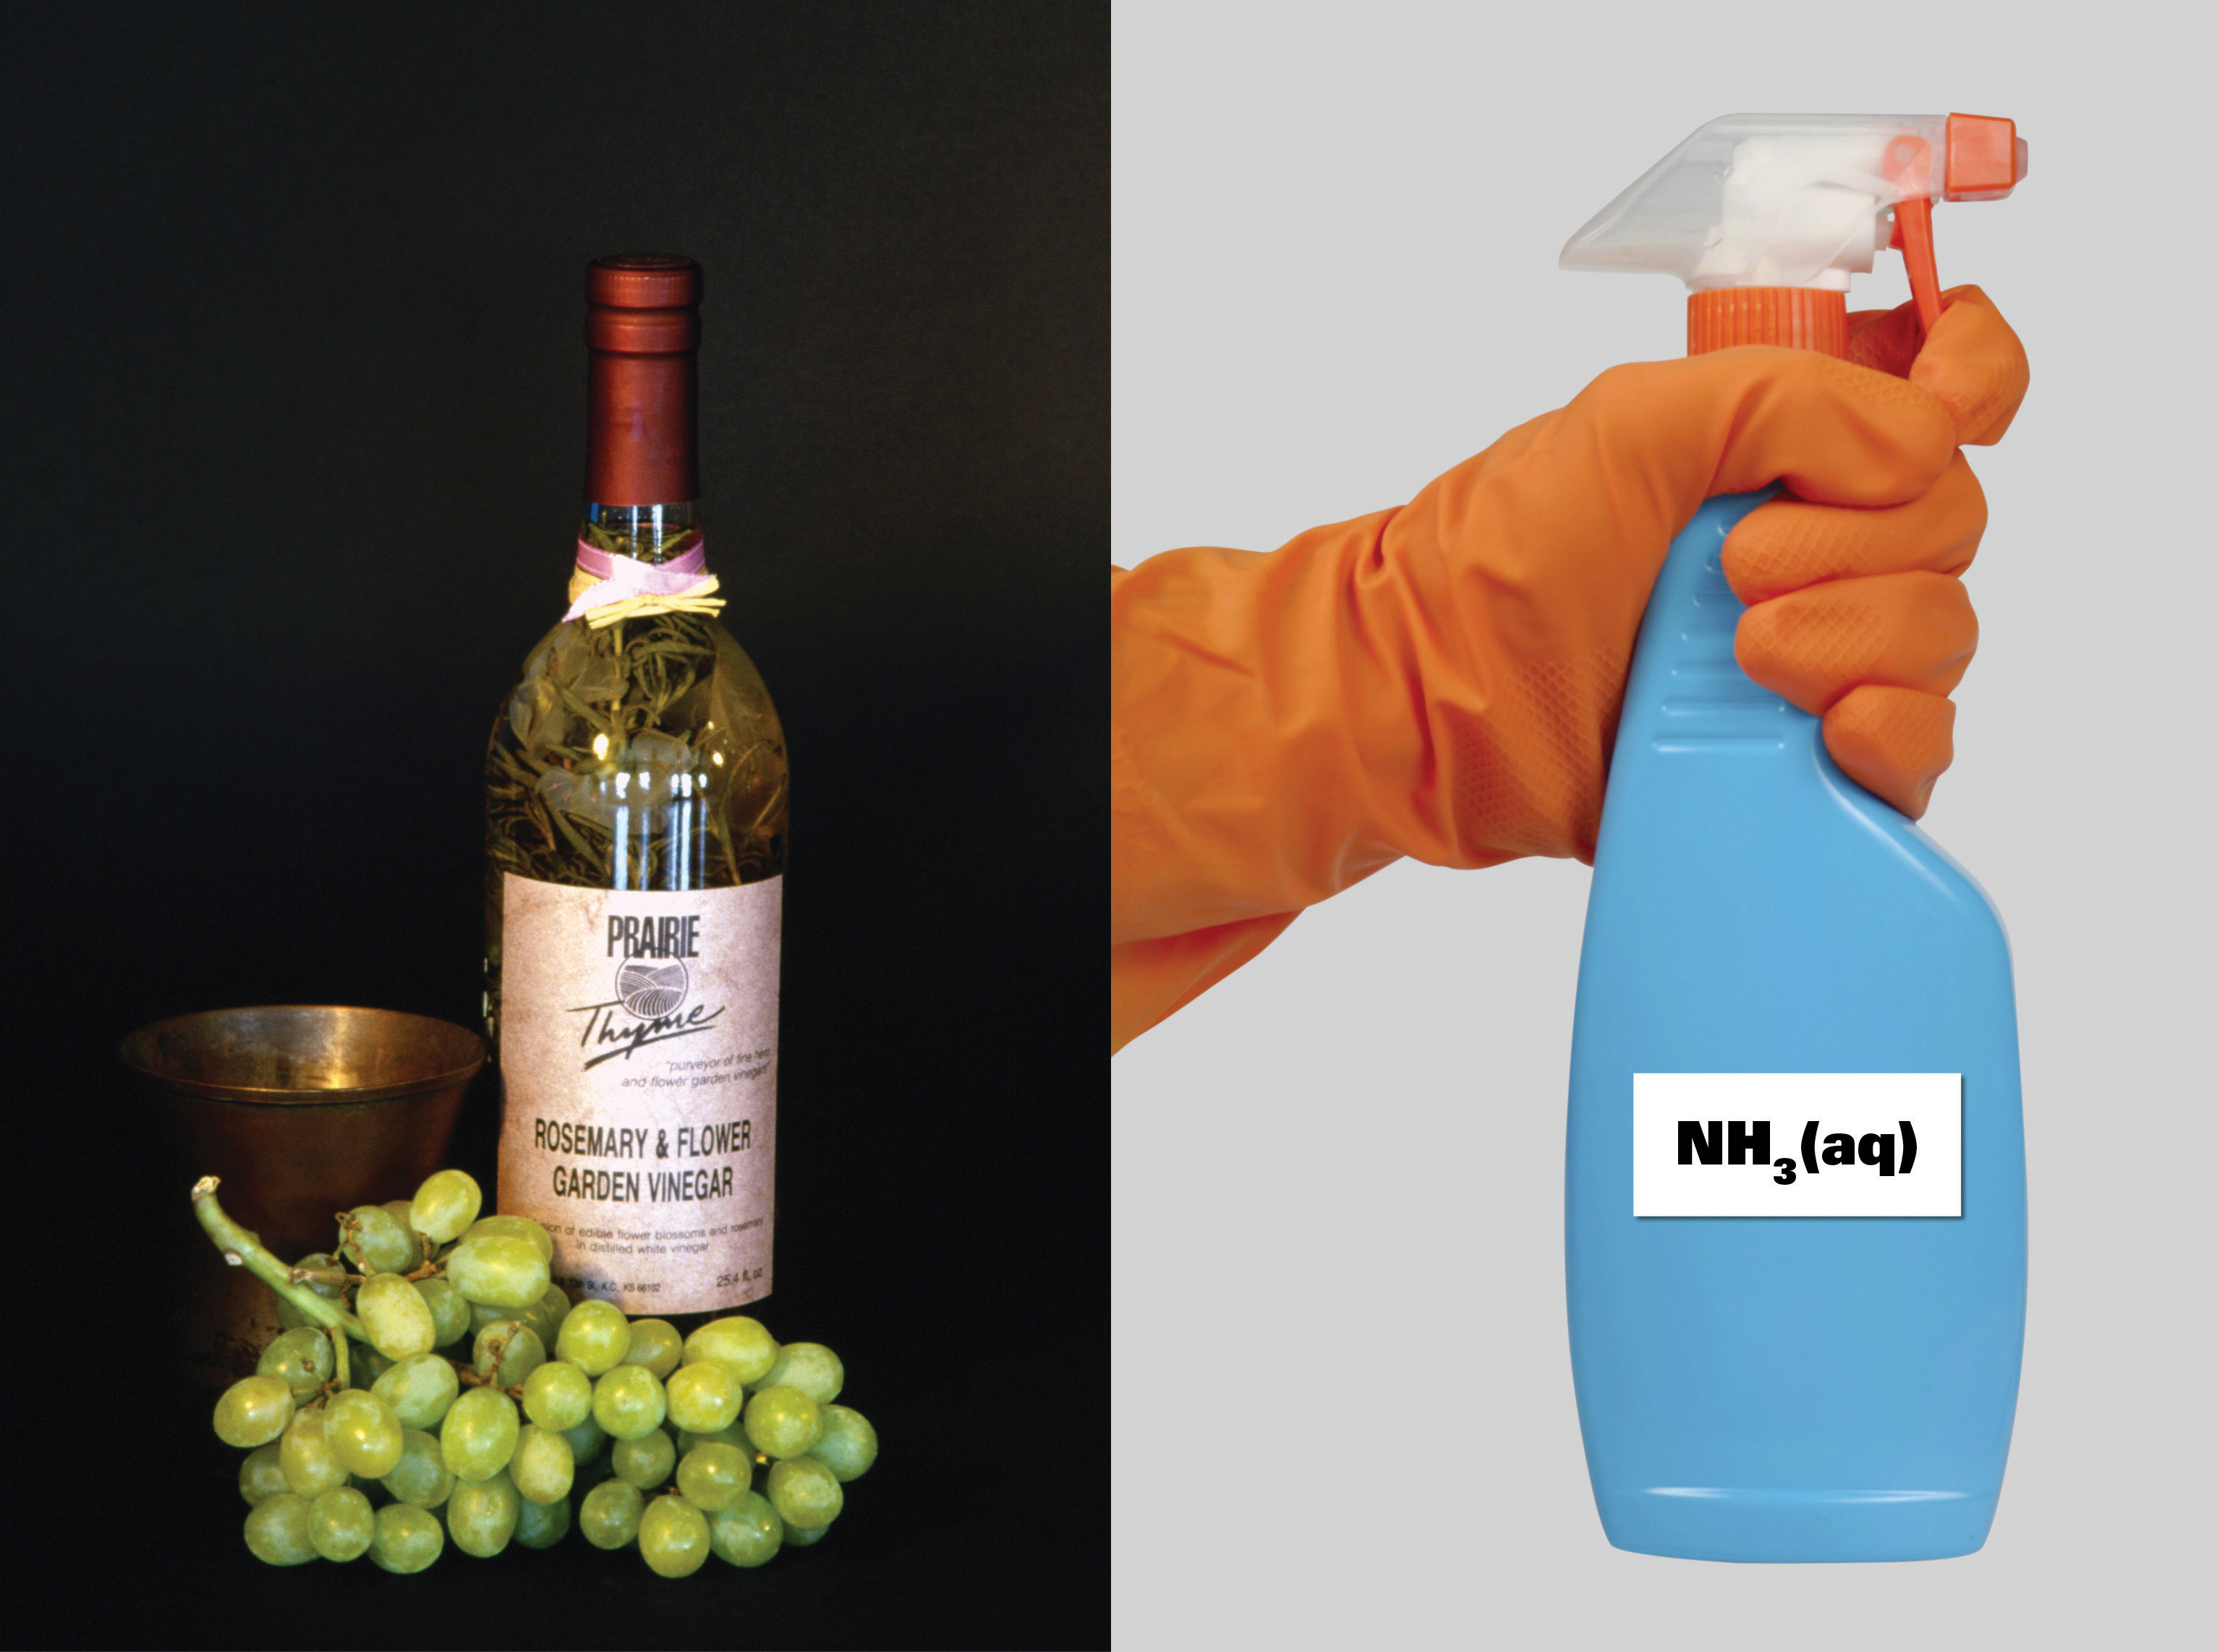 Una botella de romero y uvas y una botella de NH2 (aq).